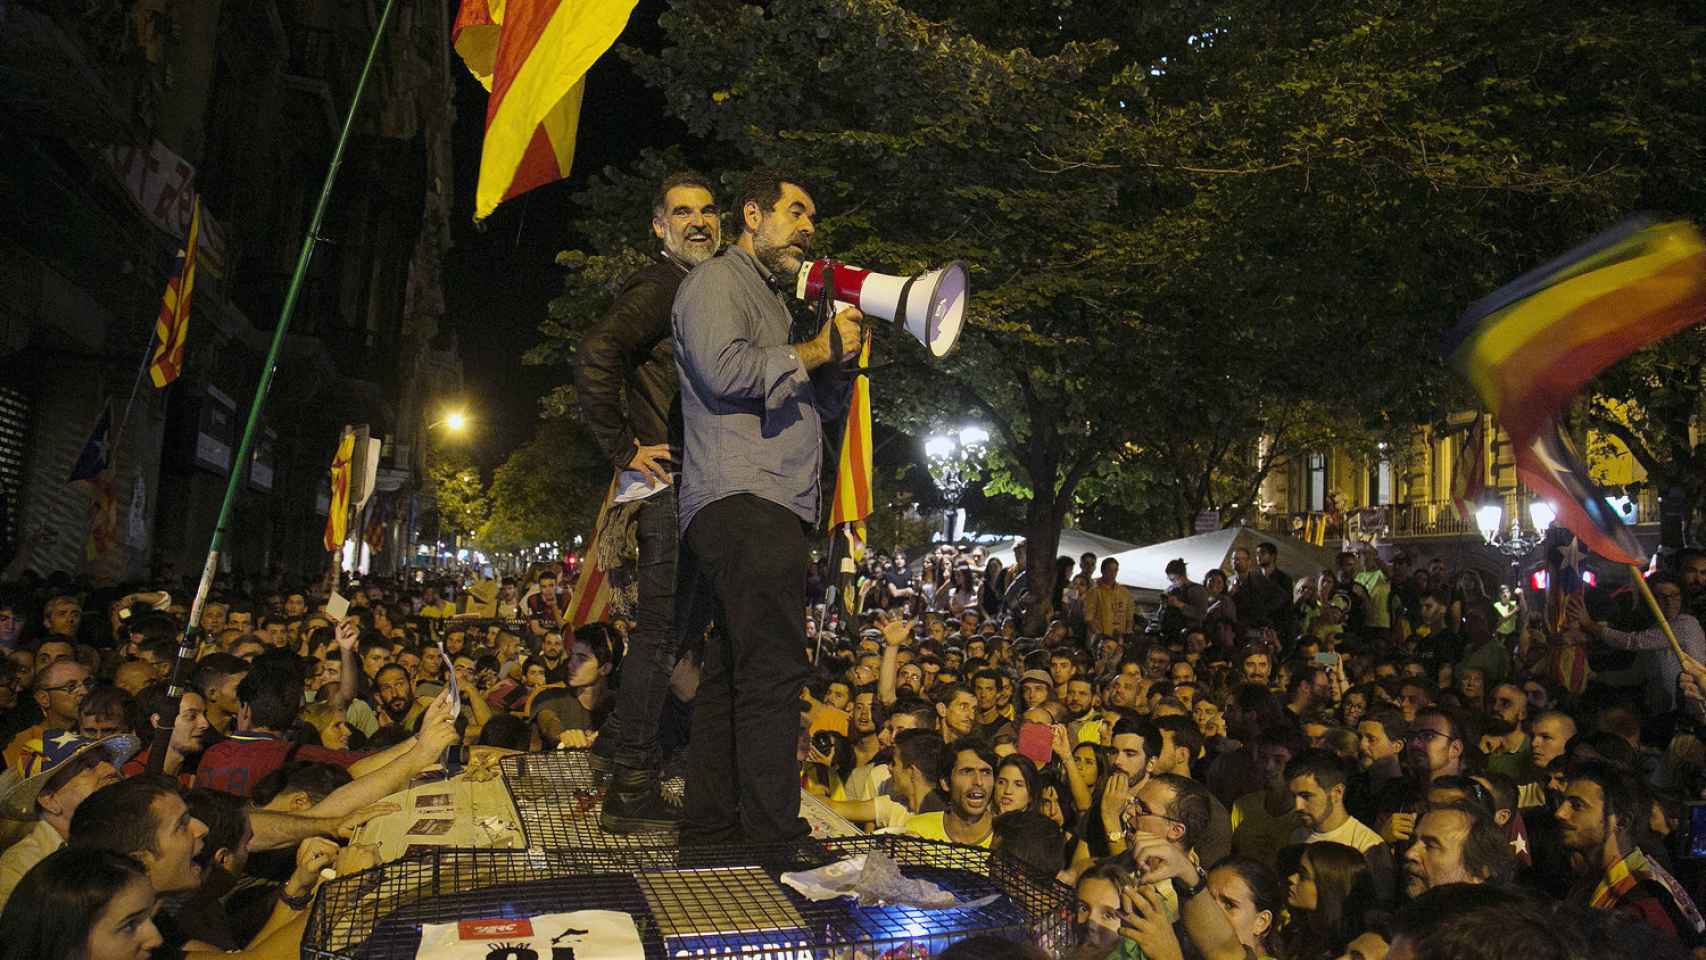 La jueza de la Audiencia Nacional Carmen Lamela envió a prisión a los activistas catalanes por liderar el acoso sufrido por la Guardia Civil durante una de sus operaciones en Barcelona.